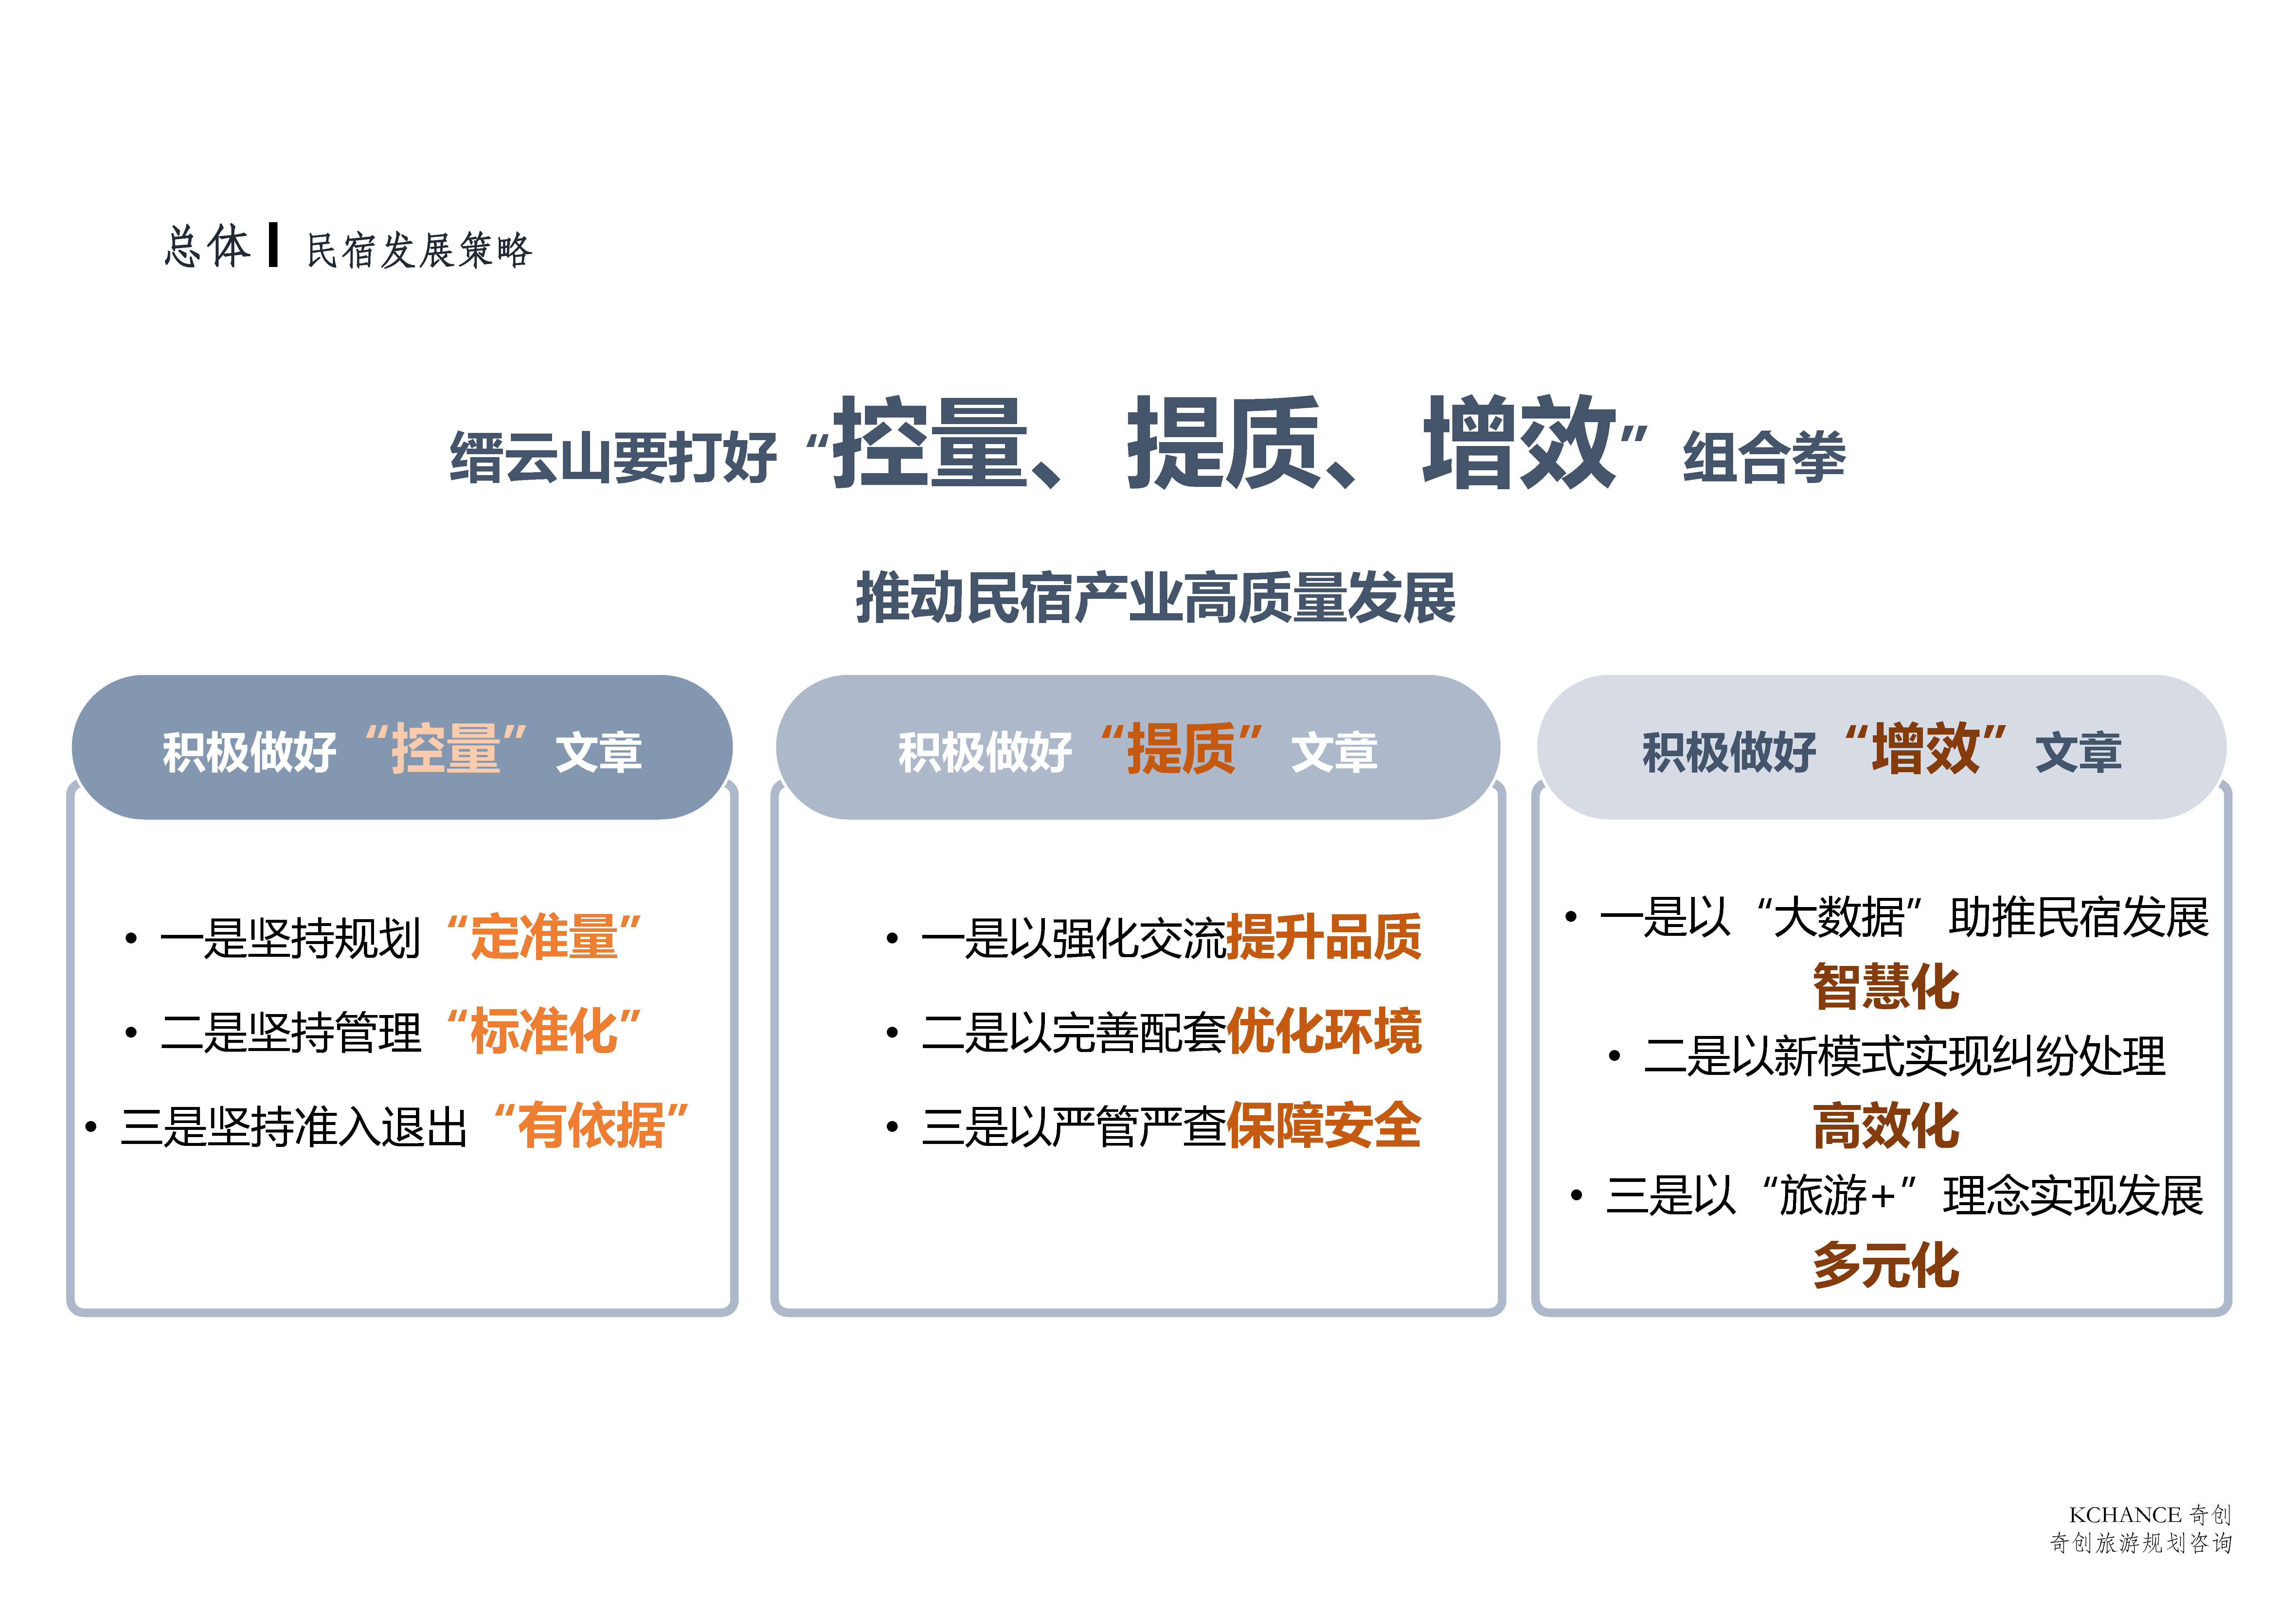 缙云山片区旅游策划及总体规划、产业规范提升总体方案